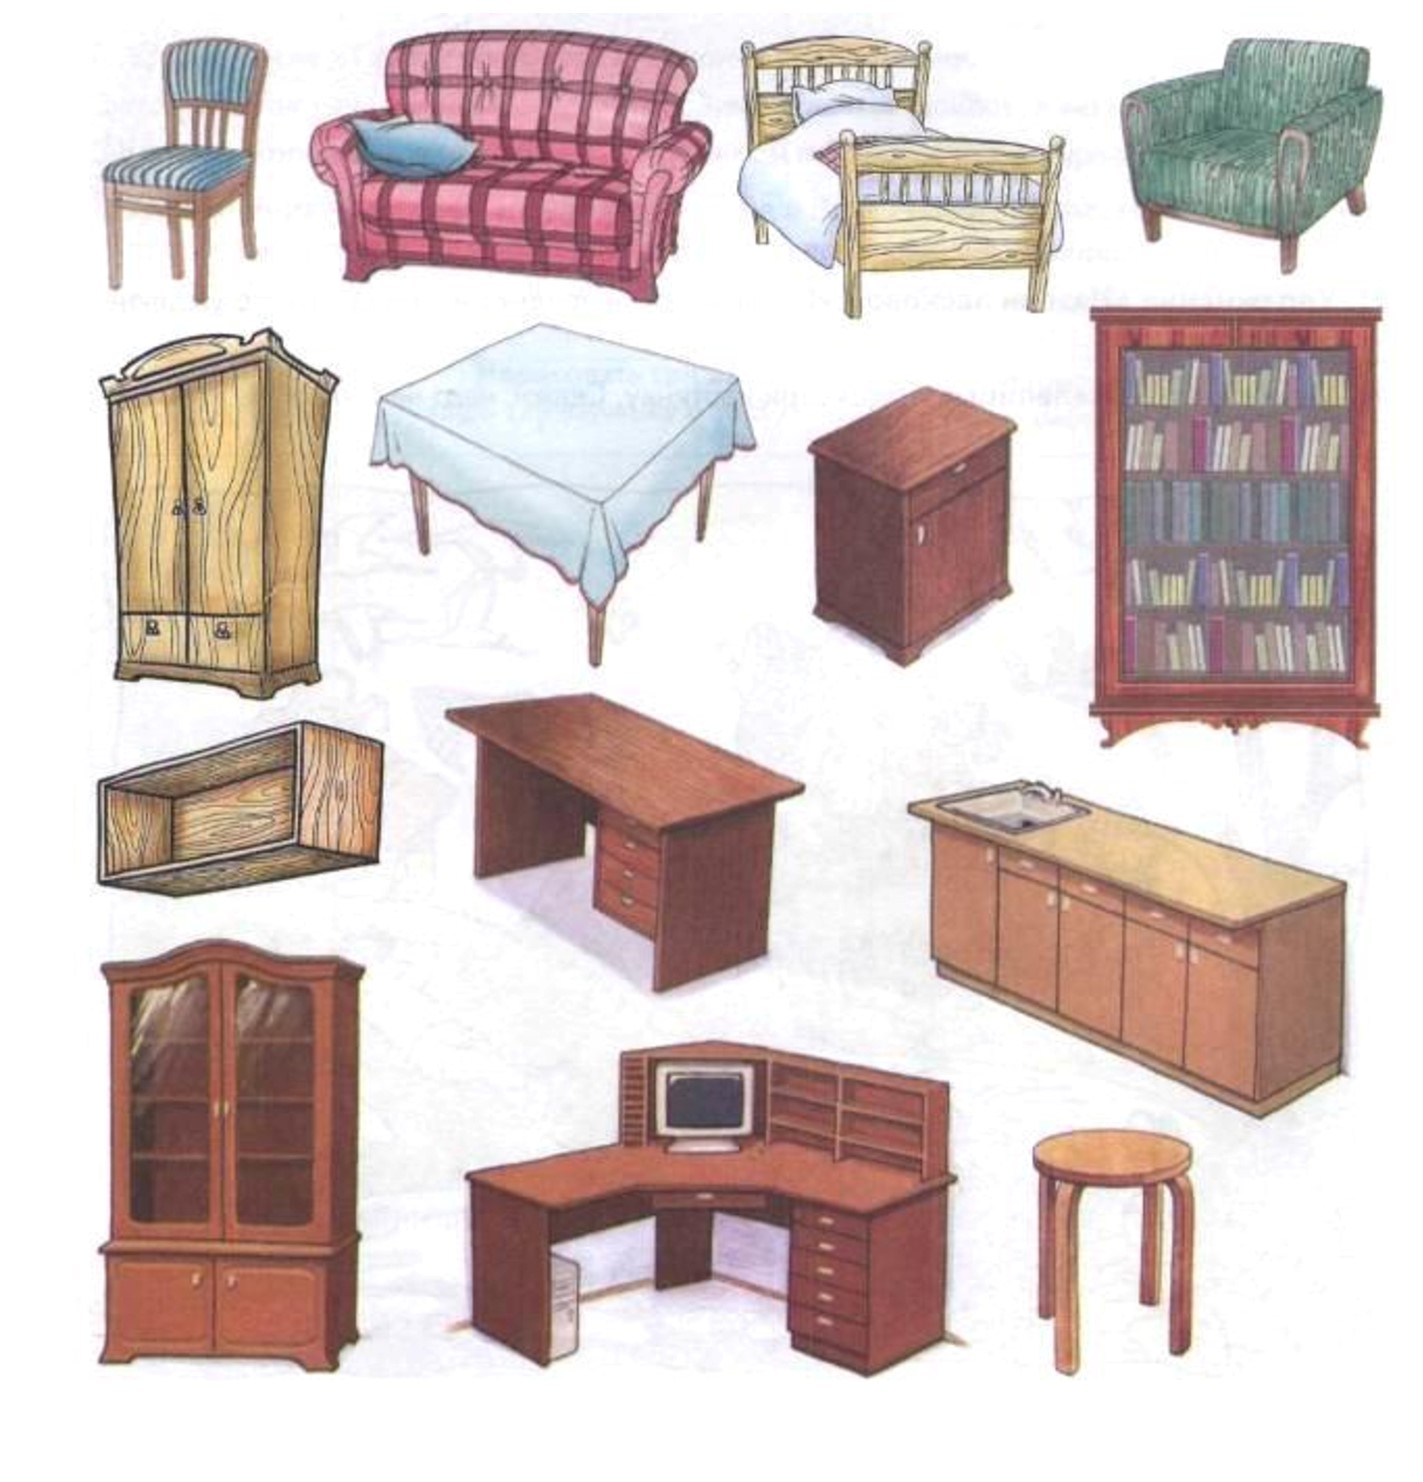 Предметы мебели